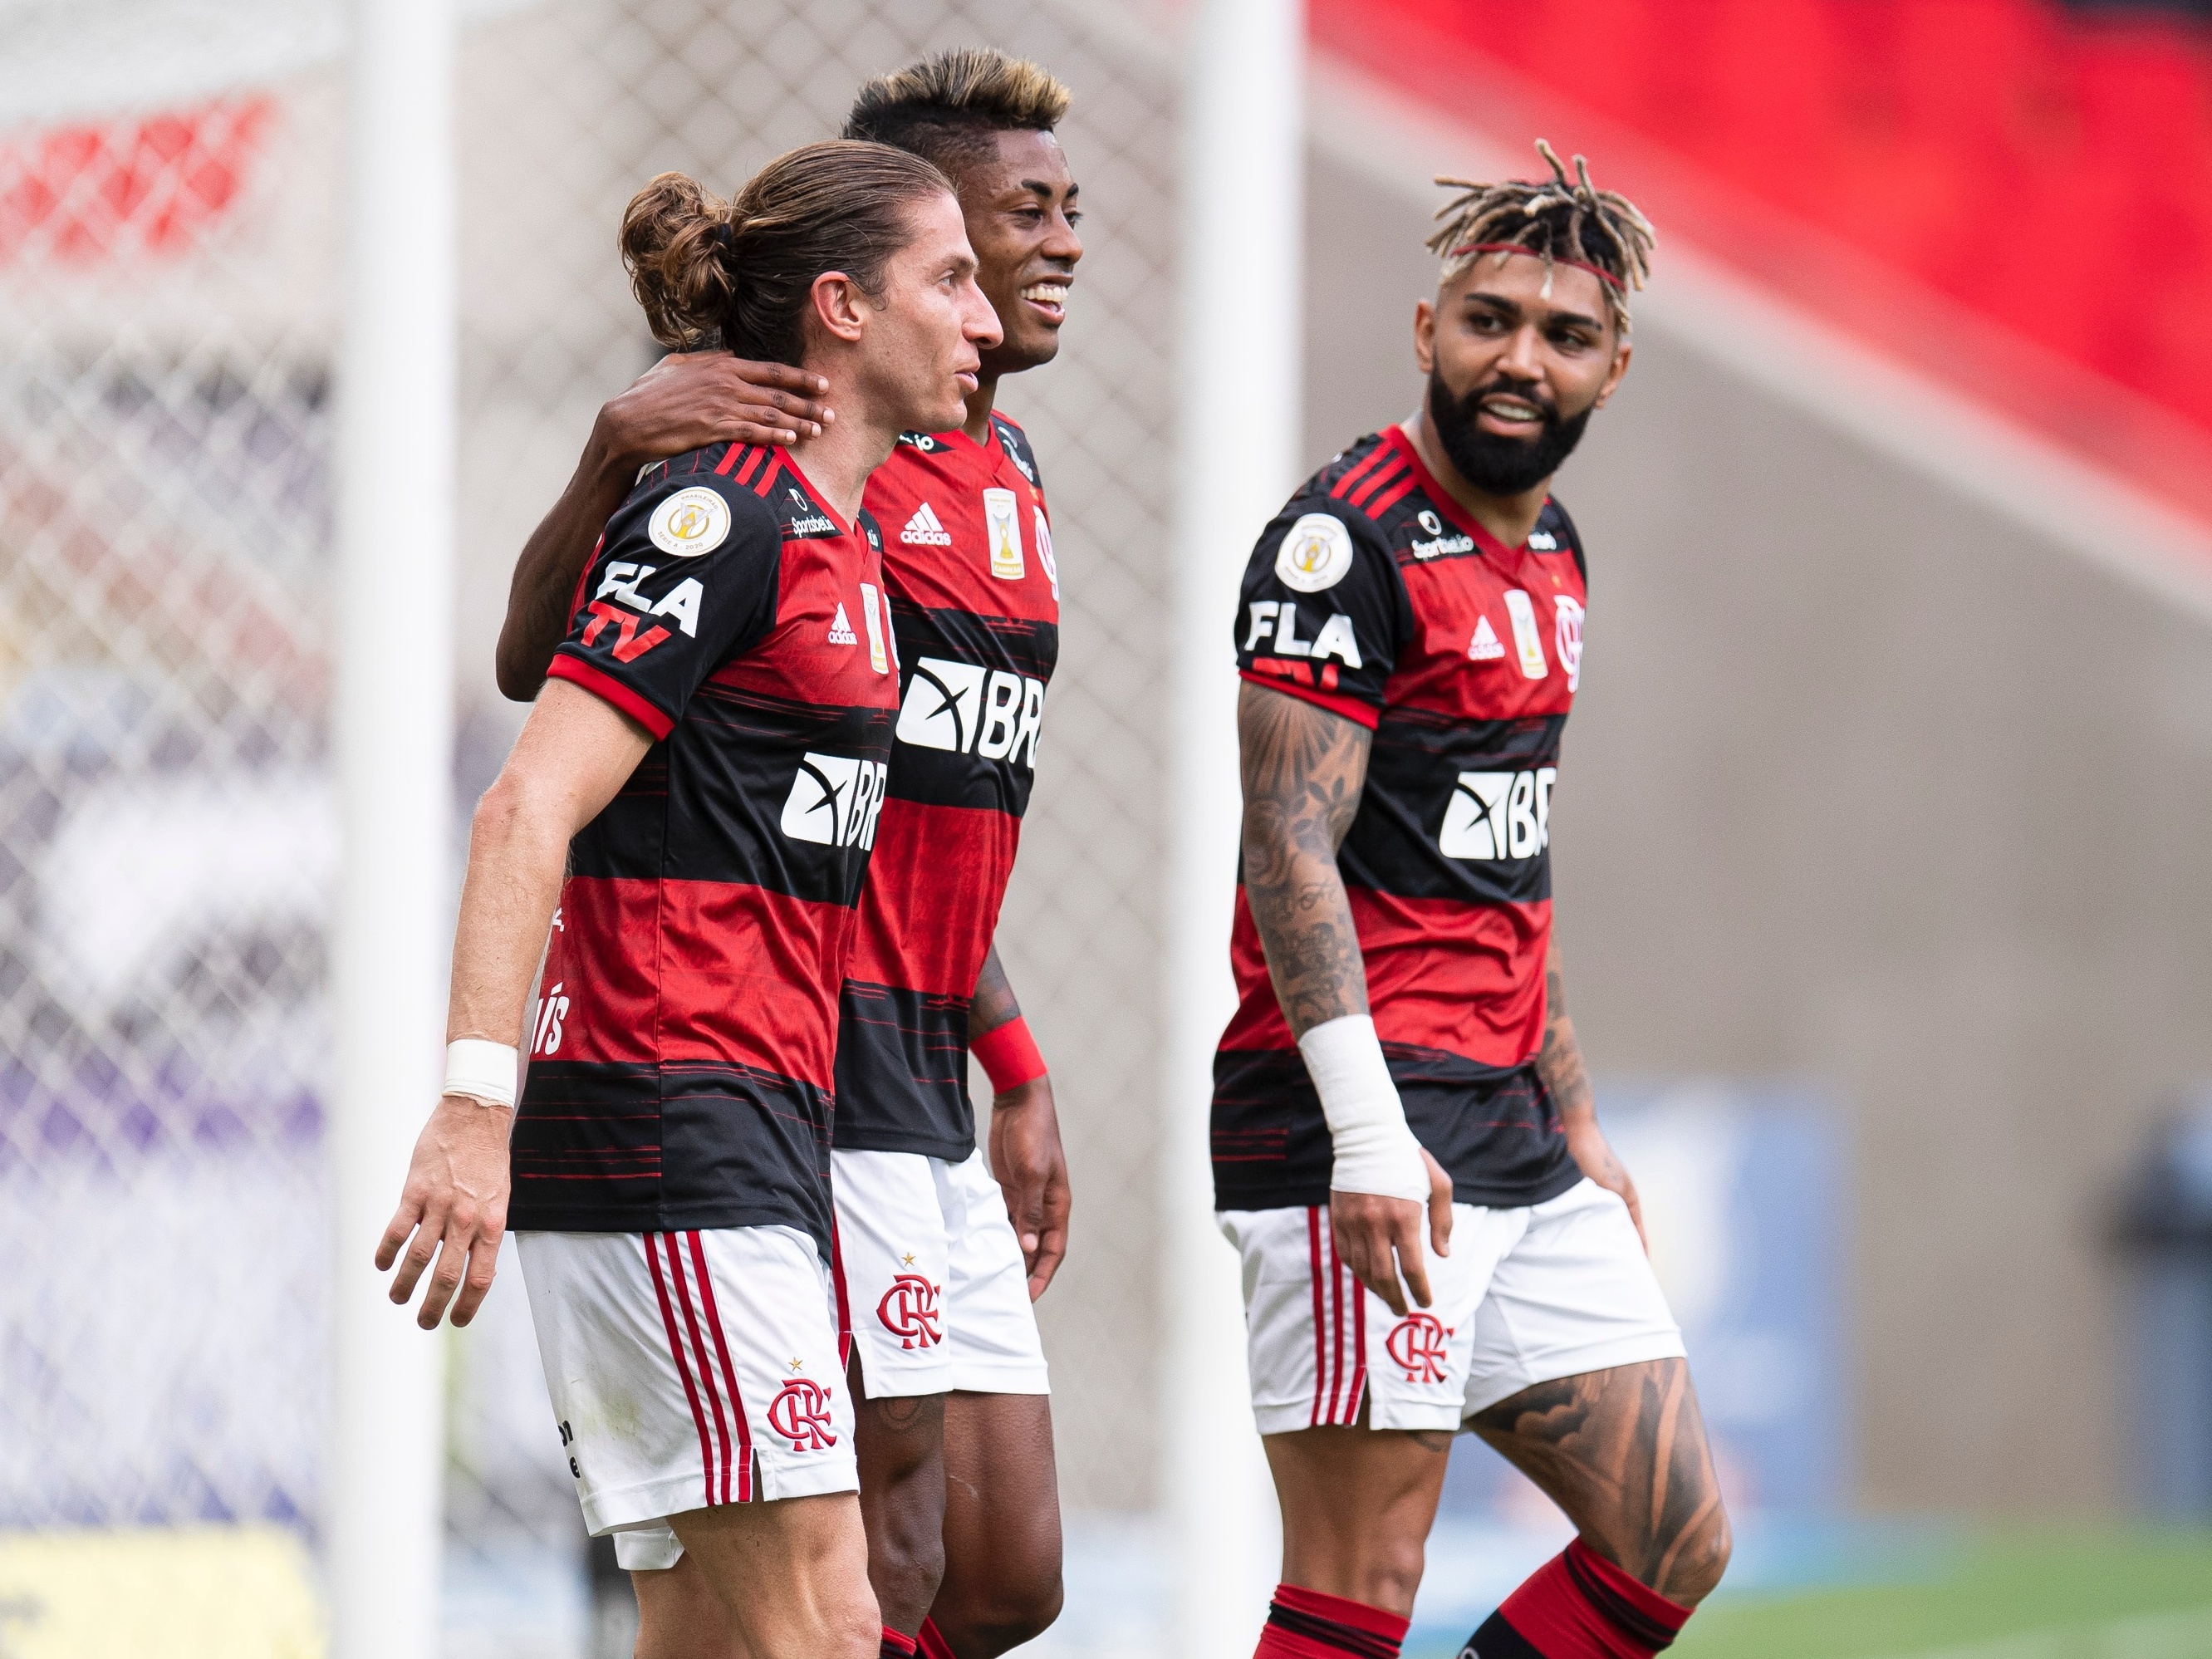 Flamengo e Santos jogam em Brasília com objetivos diferentes na tabela